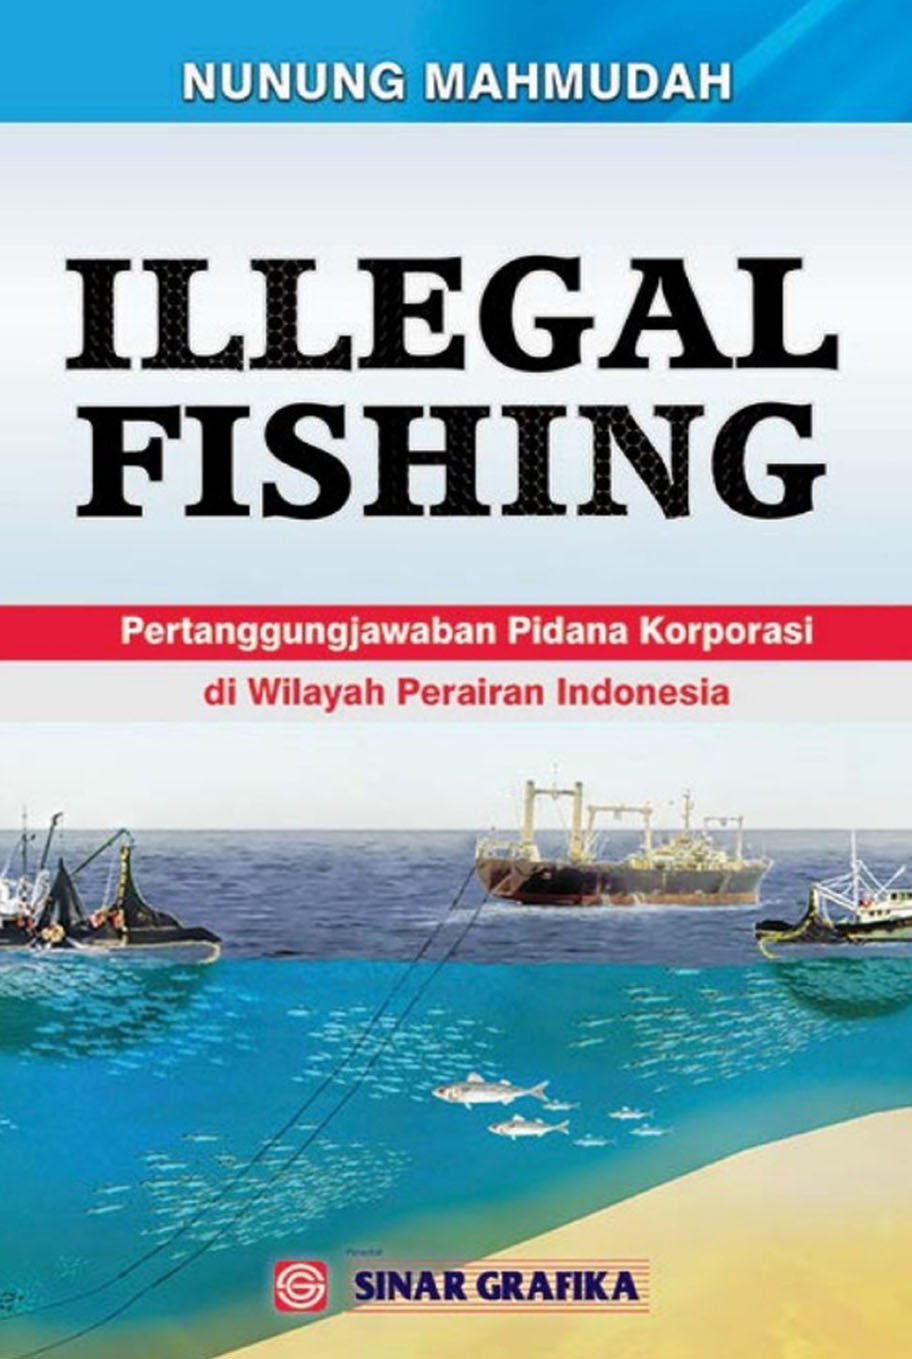 ILEGAL FISHING: Pertanggungjawaban Pidana Korporasi di Wilayah Perairan Indonesia